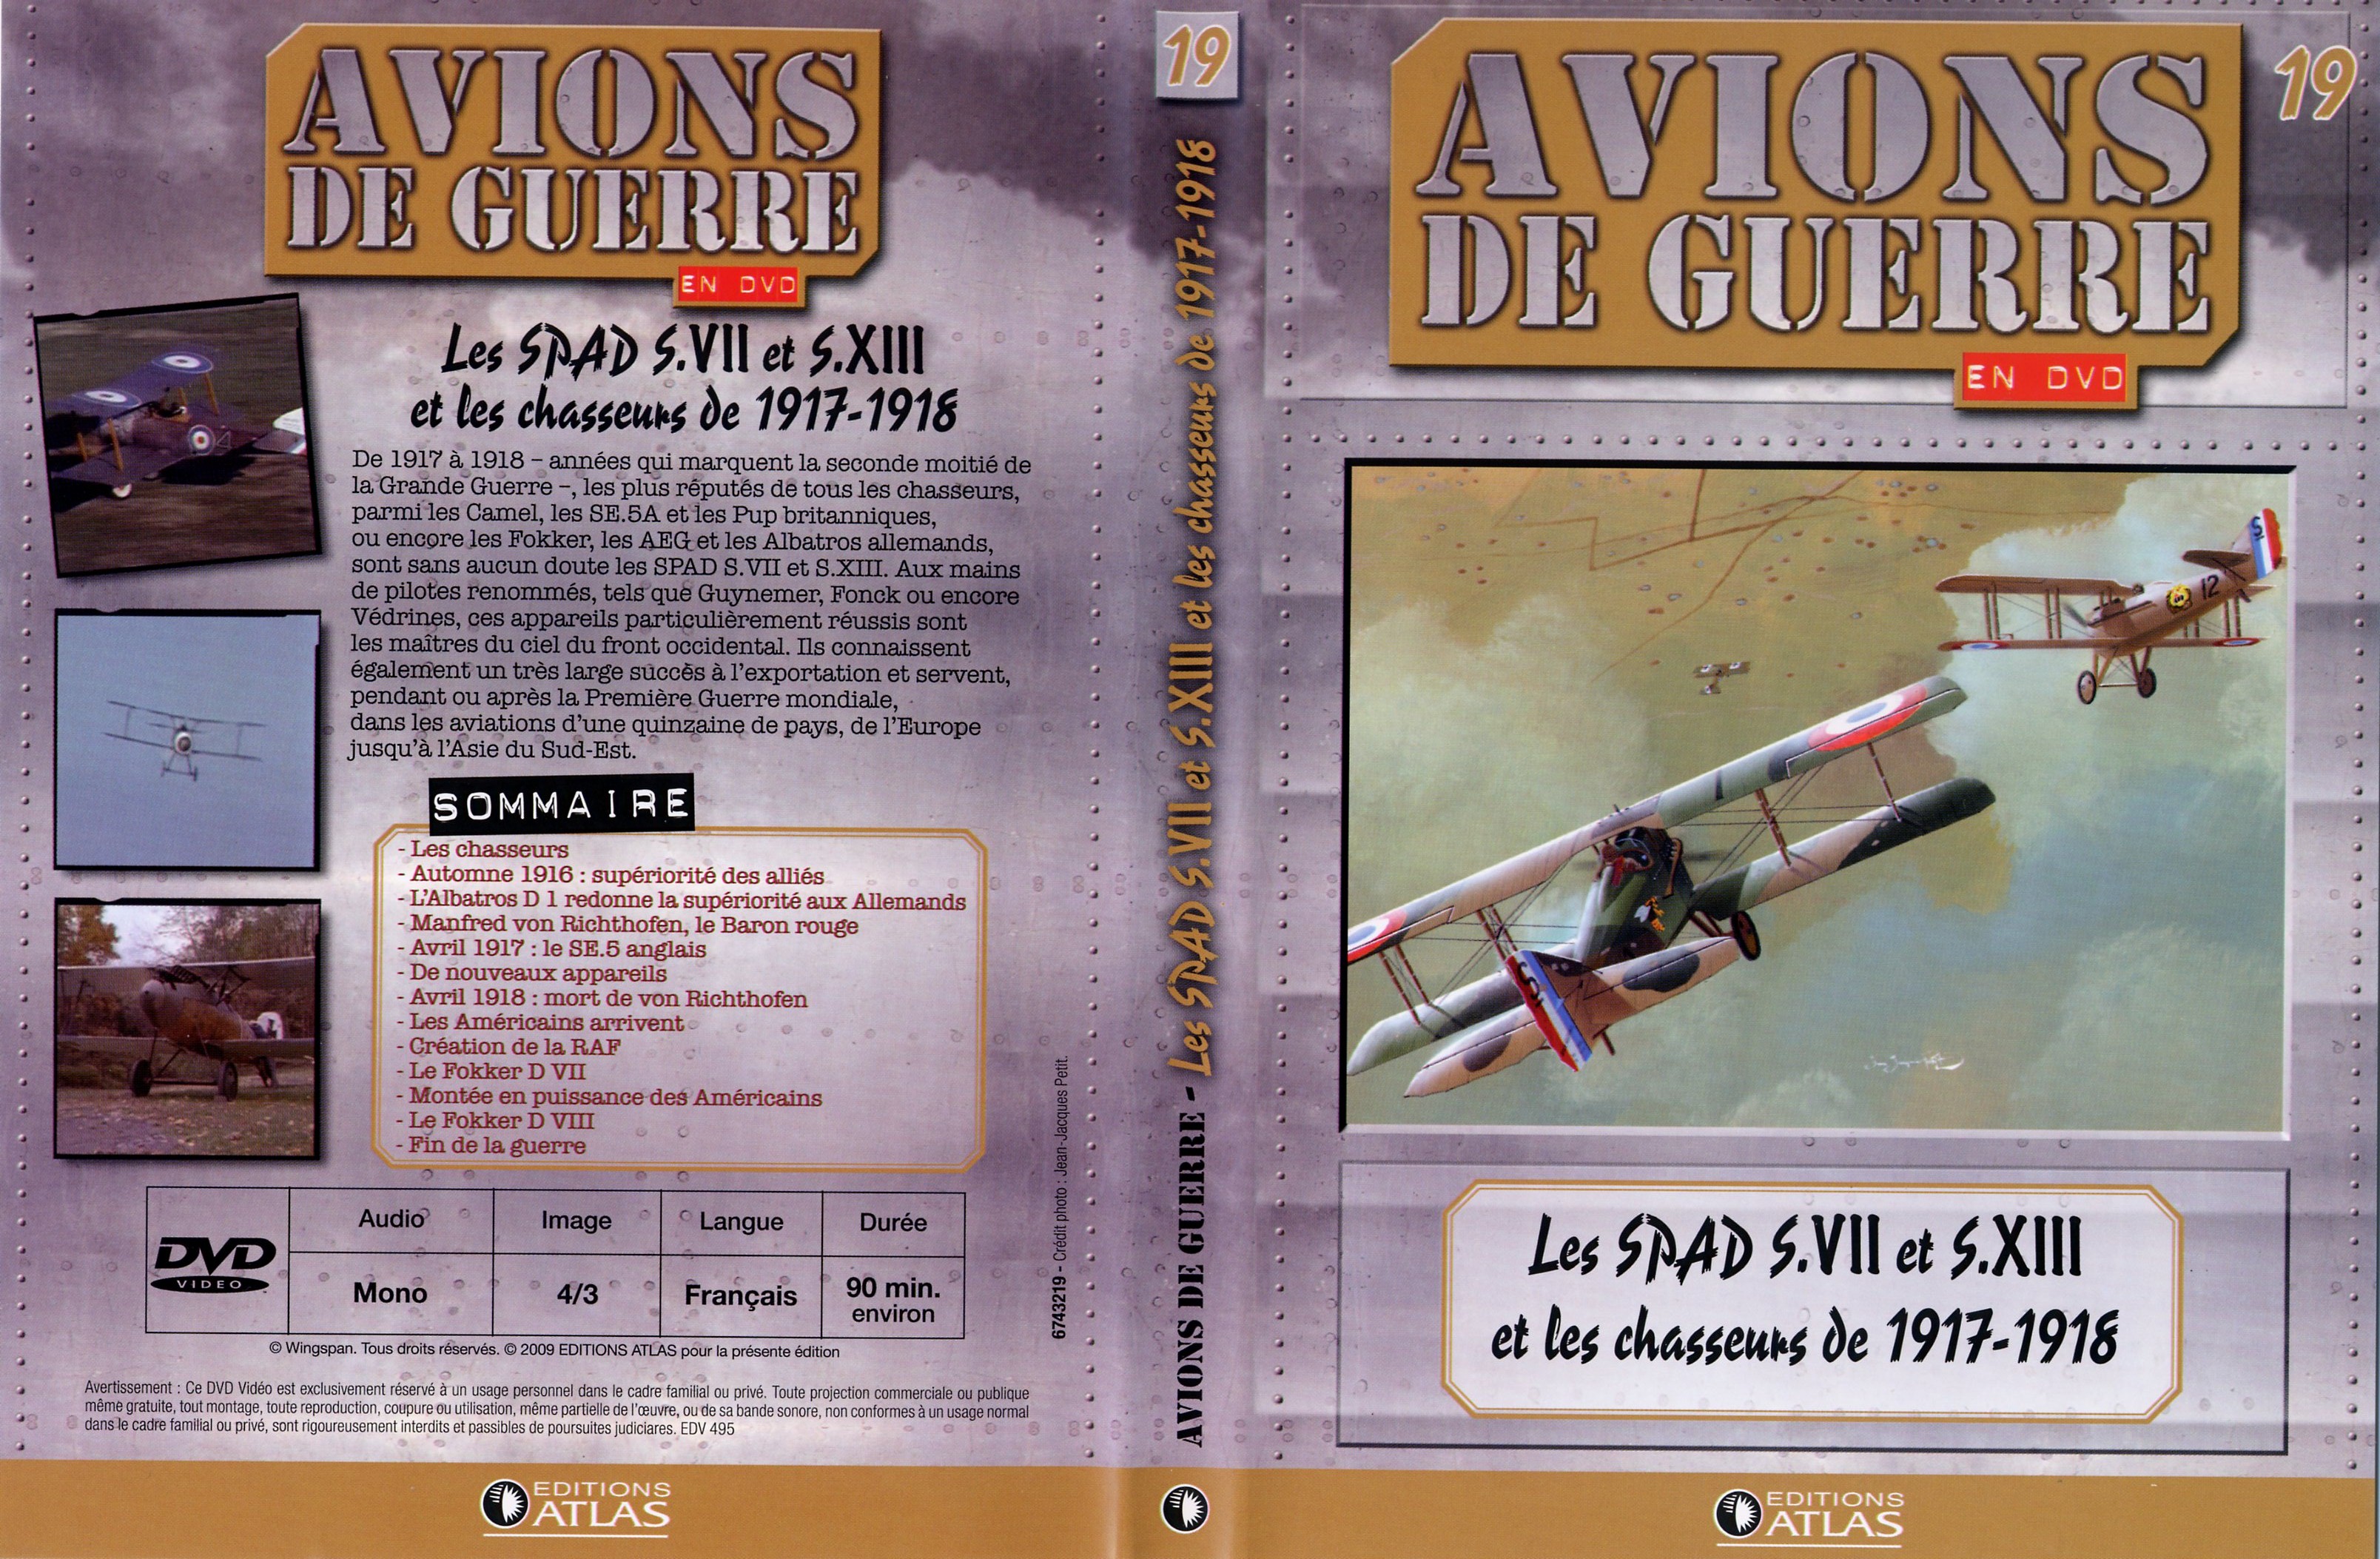 Jaquette DVD Avions de guerre en DVD vol 19